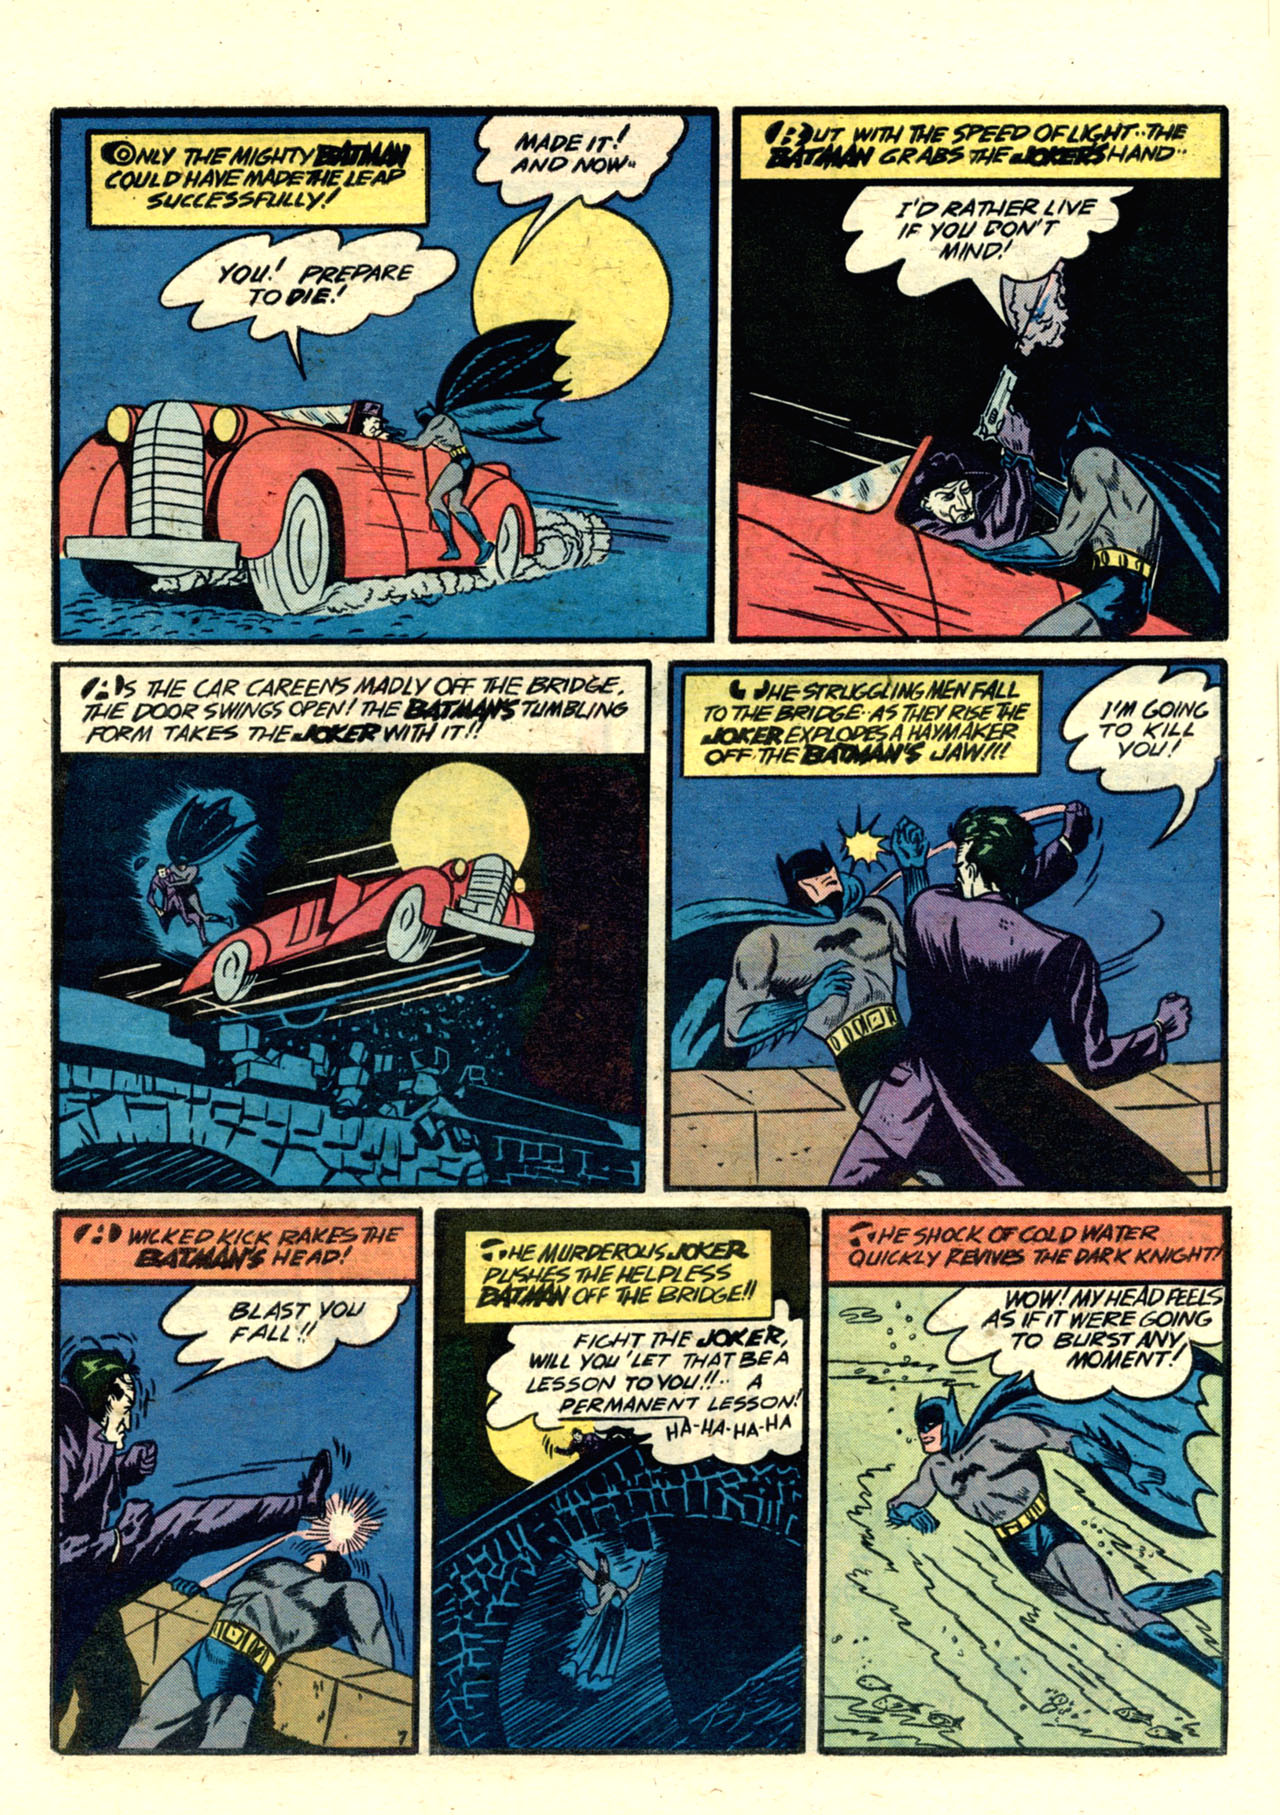 Batman v1 001 | Read All Comics Online